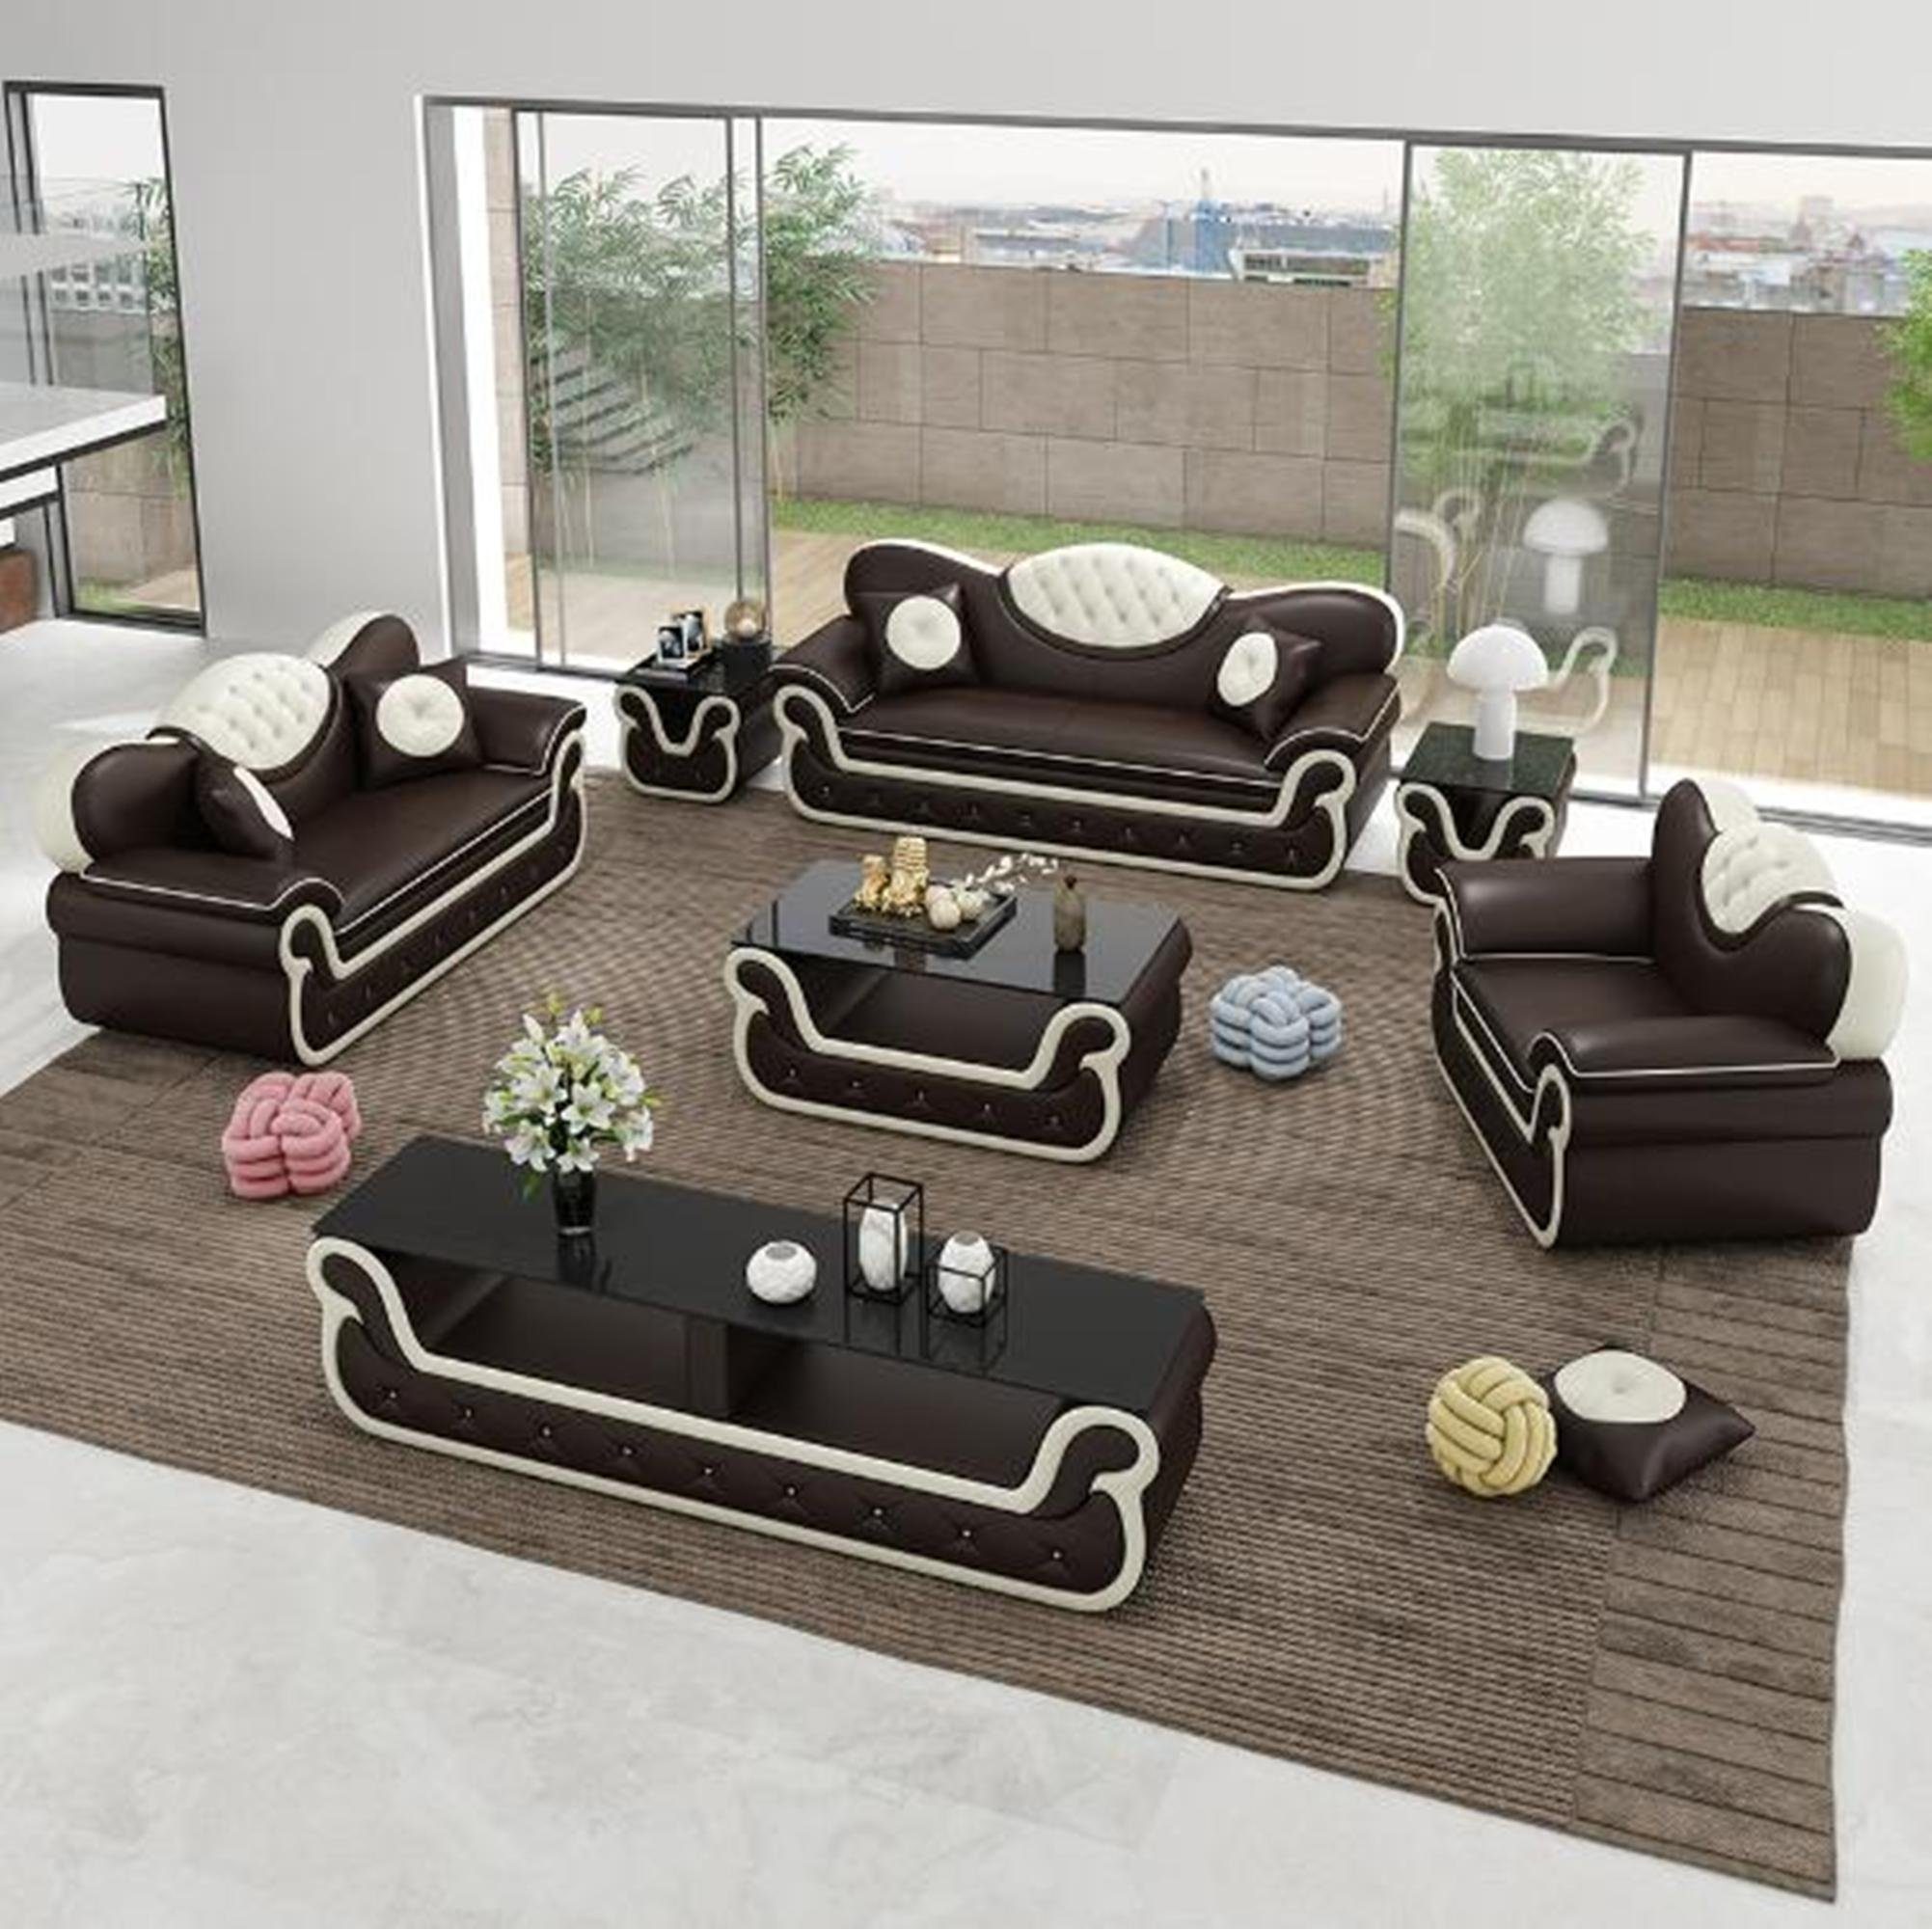 Moderne Sofa Stoff, Polster Sofagarnitur Braun/Beige JVmoebel in Couch Sofas Sitzer Couchen 3+1+1 Europe Made